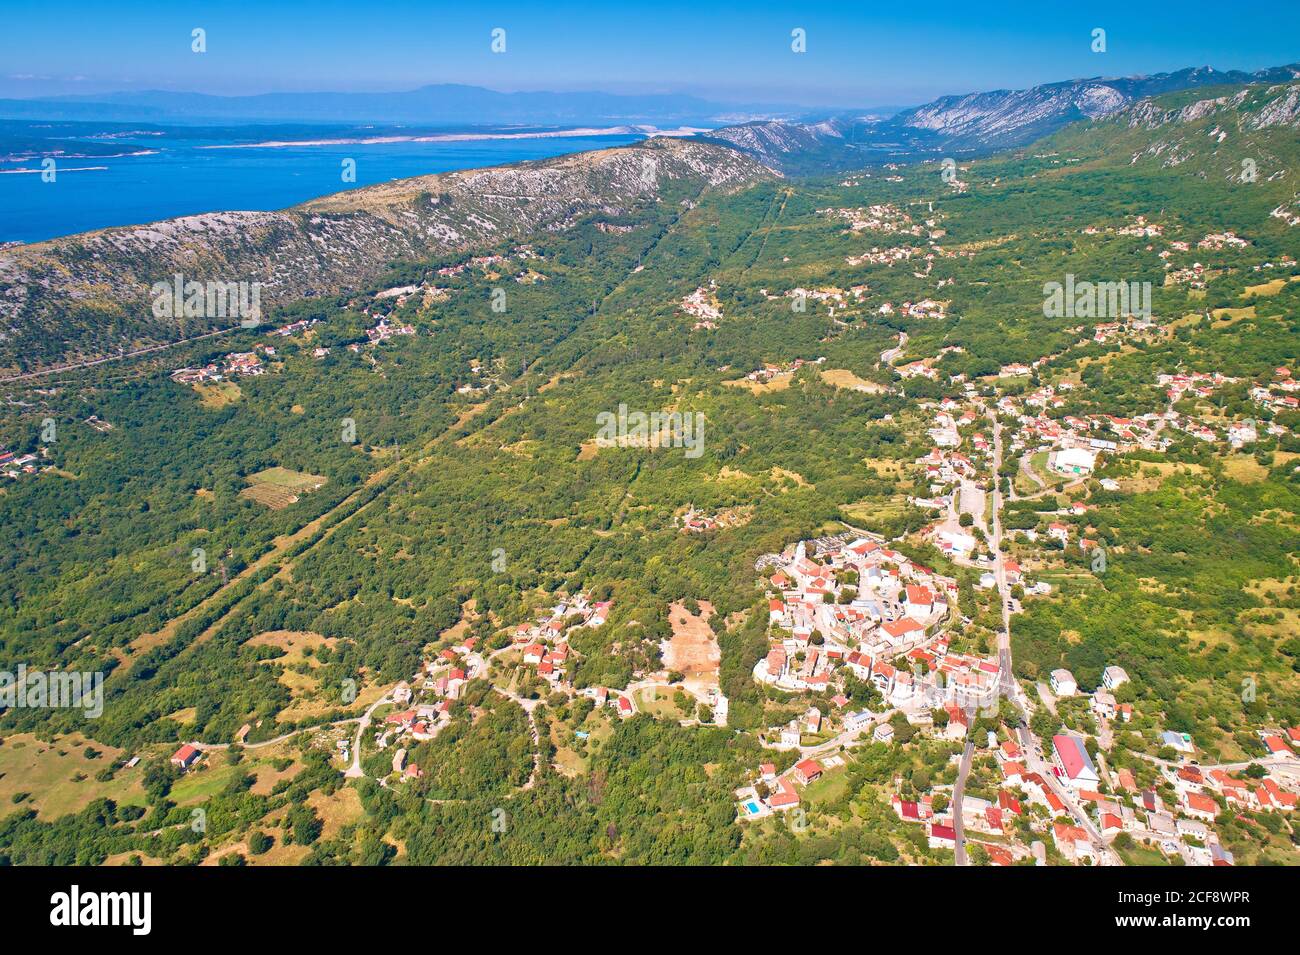 Vinodol valley and town of Bribir aerial view, Kvarner region of Croatia Stock Photo